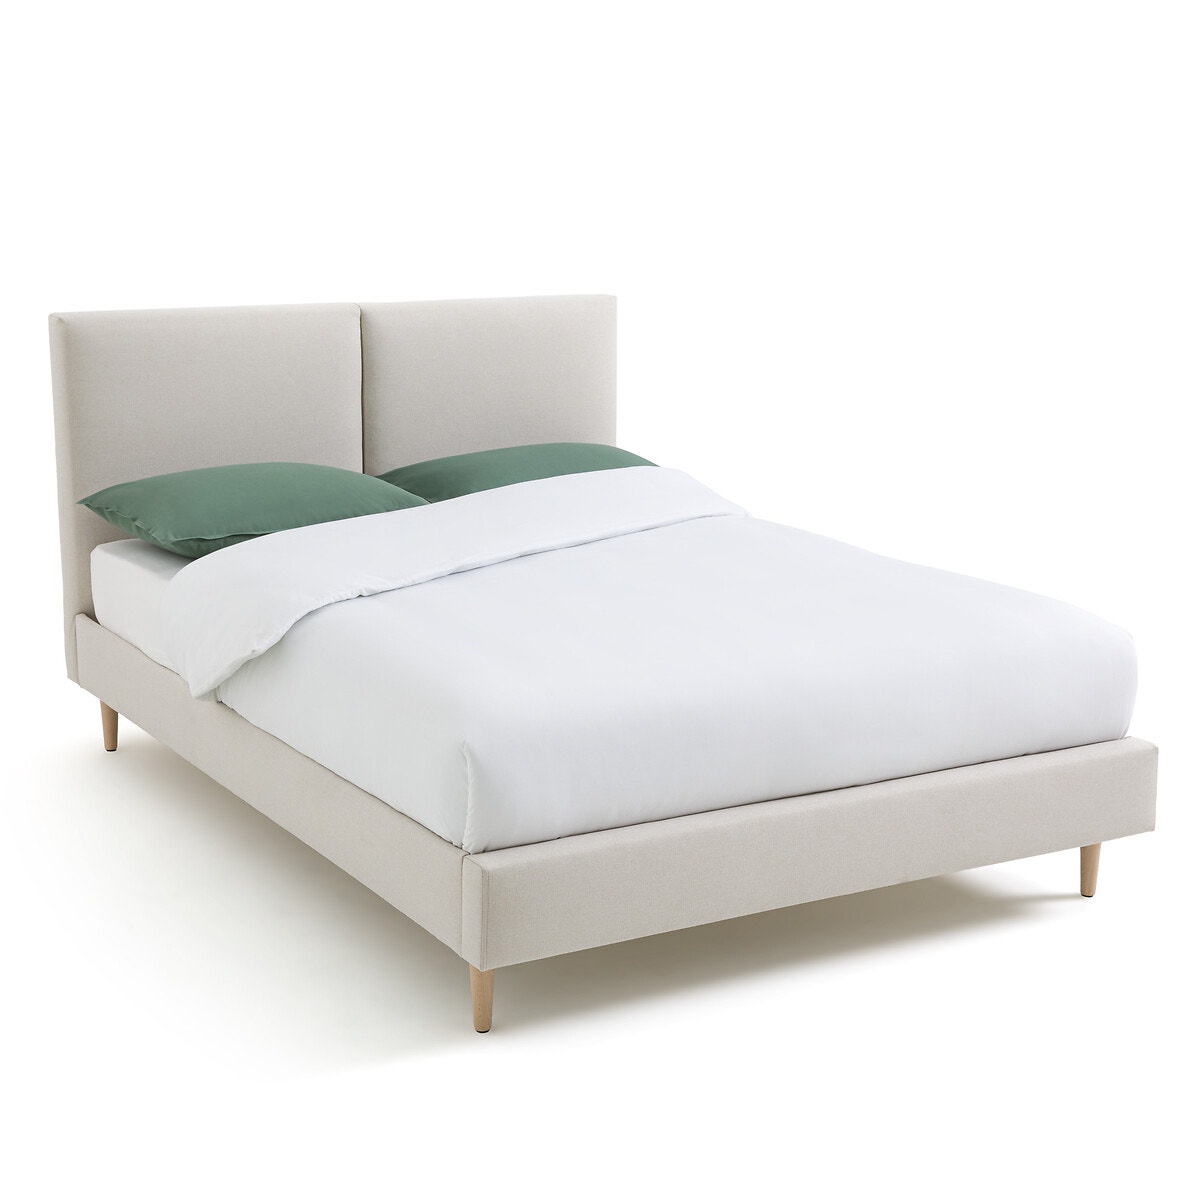 Σπίτι > Έπιπλα > Υπνοδωμάτιο > Κρεβάτια Κρεβάτι με τάβλες Μ147xΠ207cm